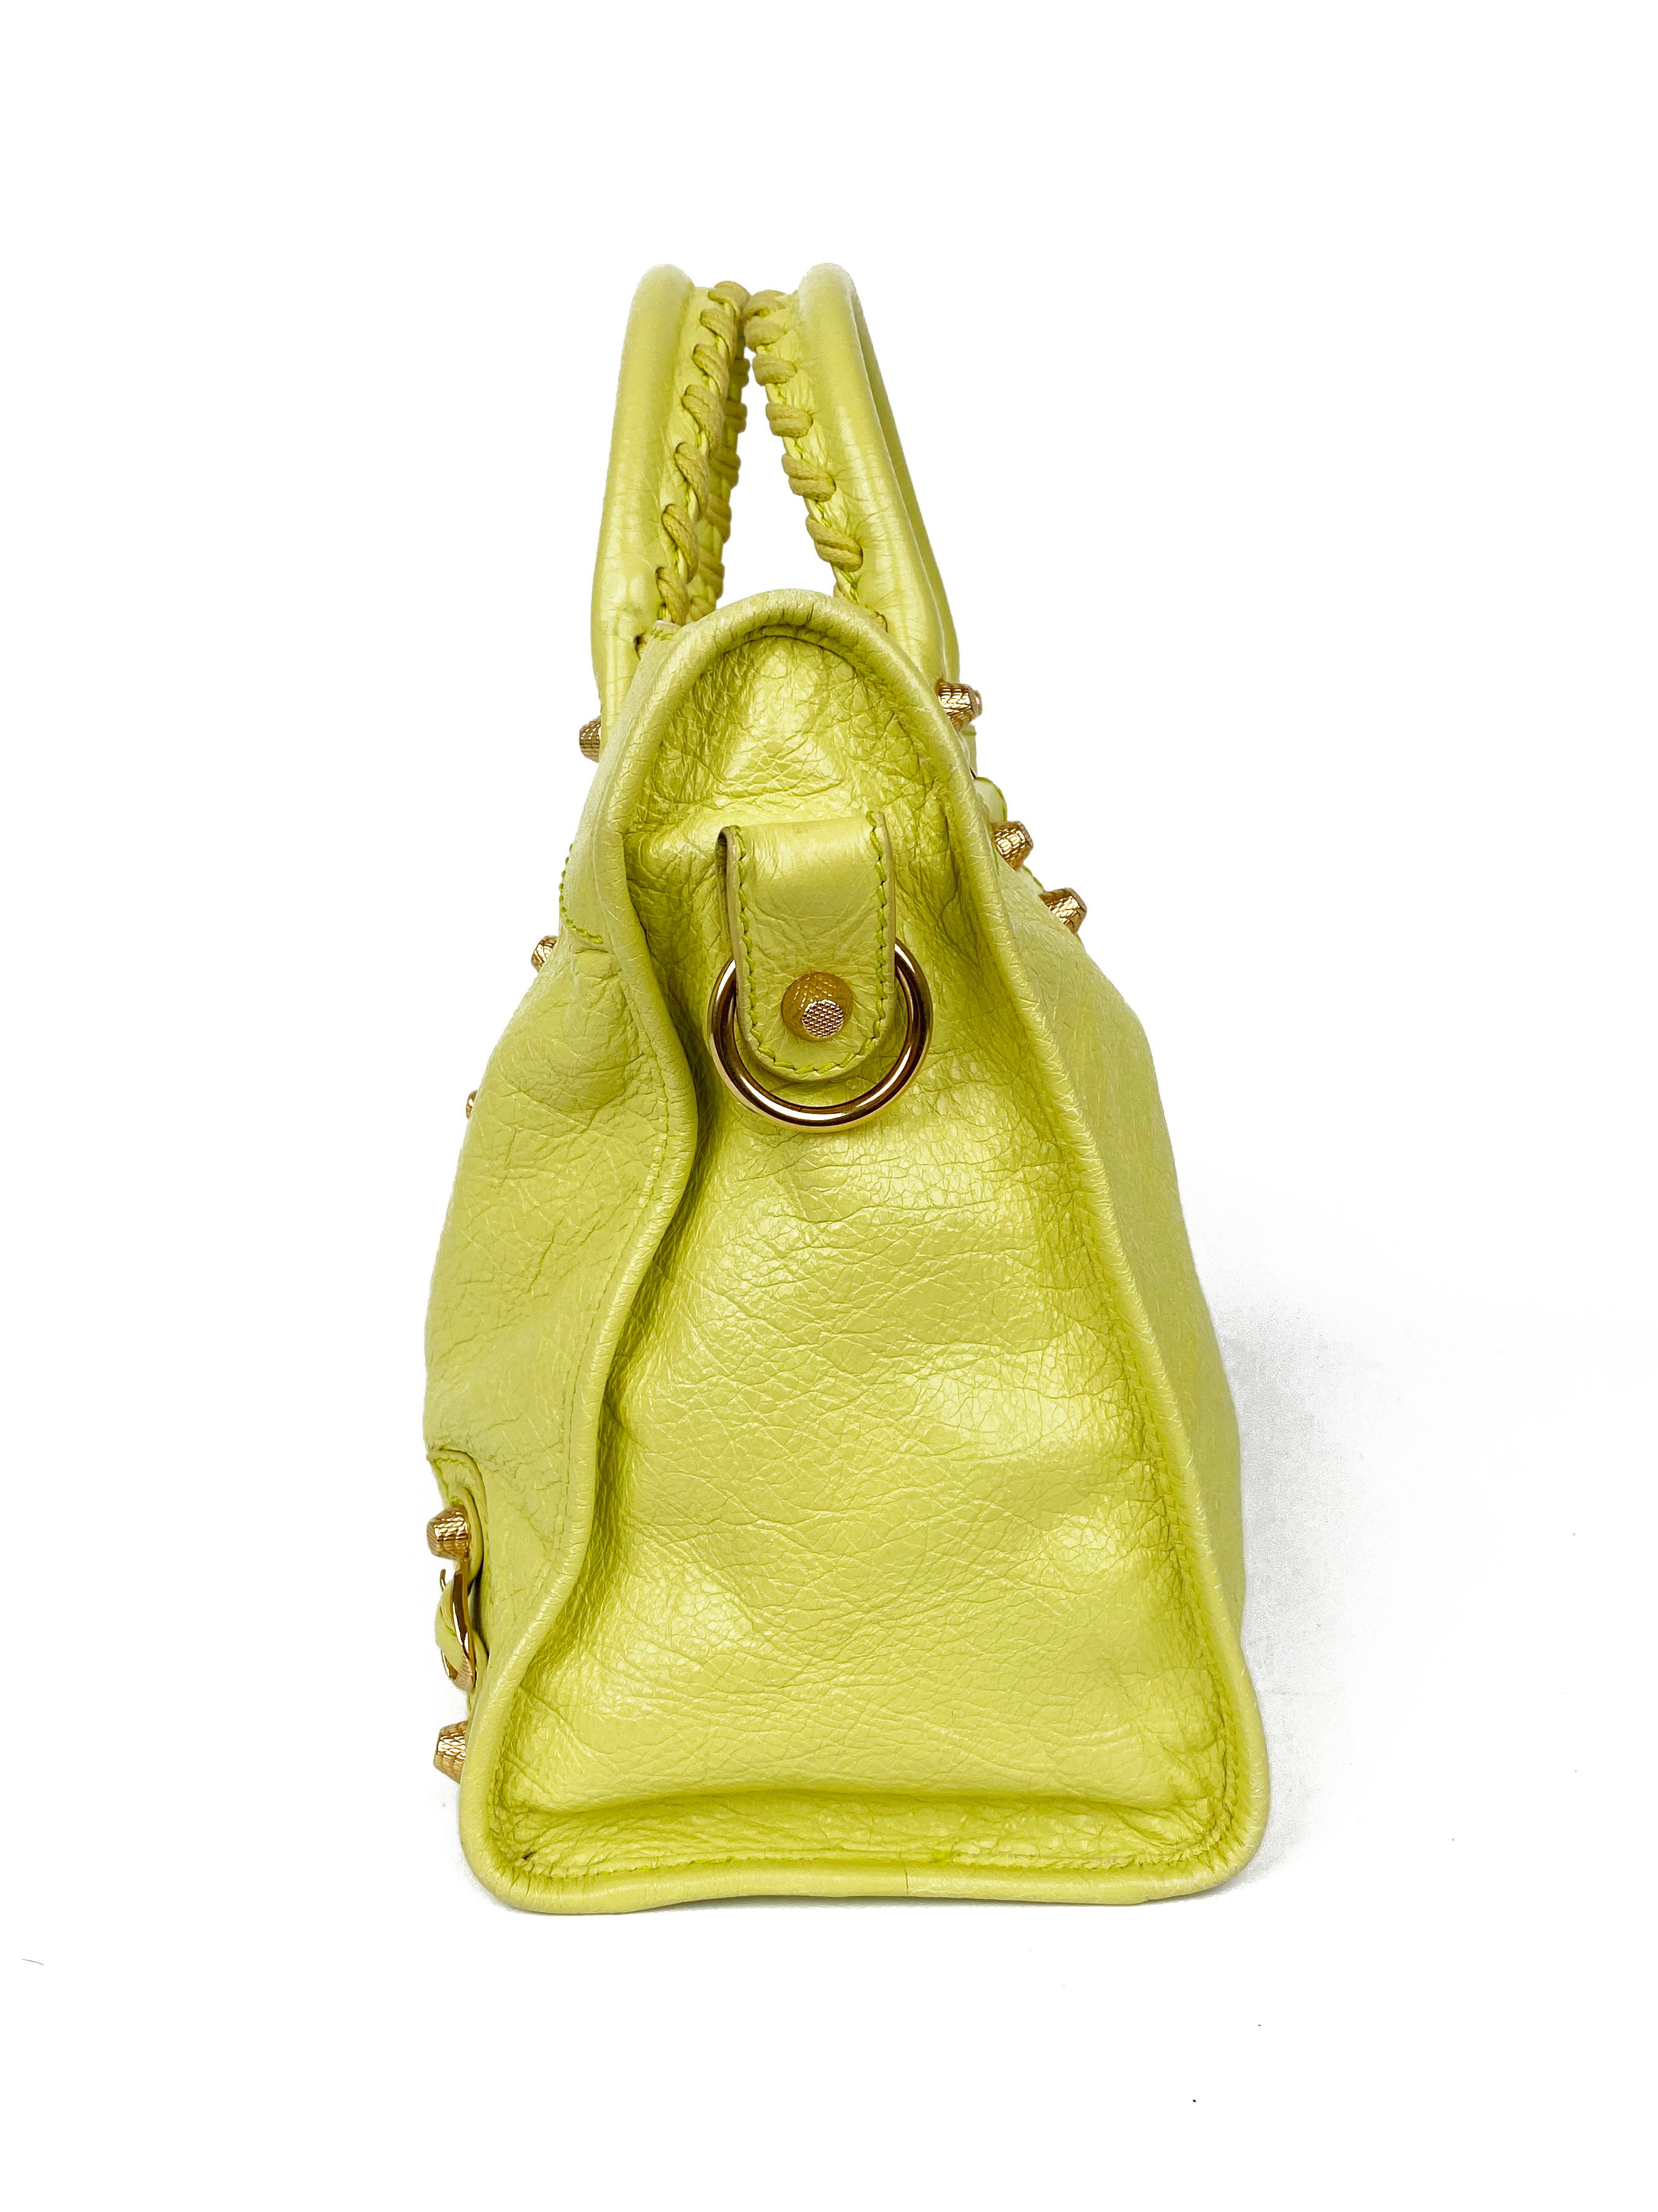 Balenciaga Pistachio Yellow Medium City Bag